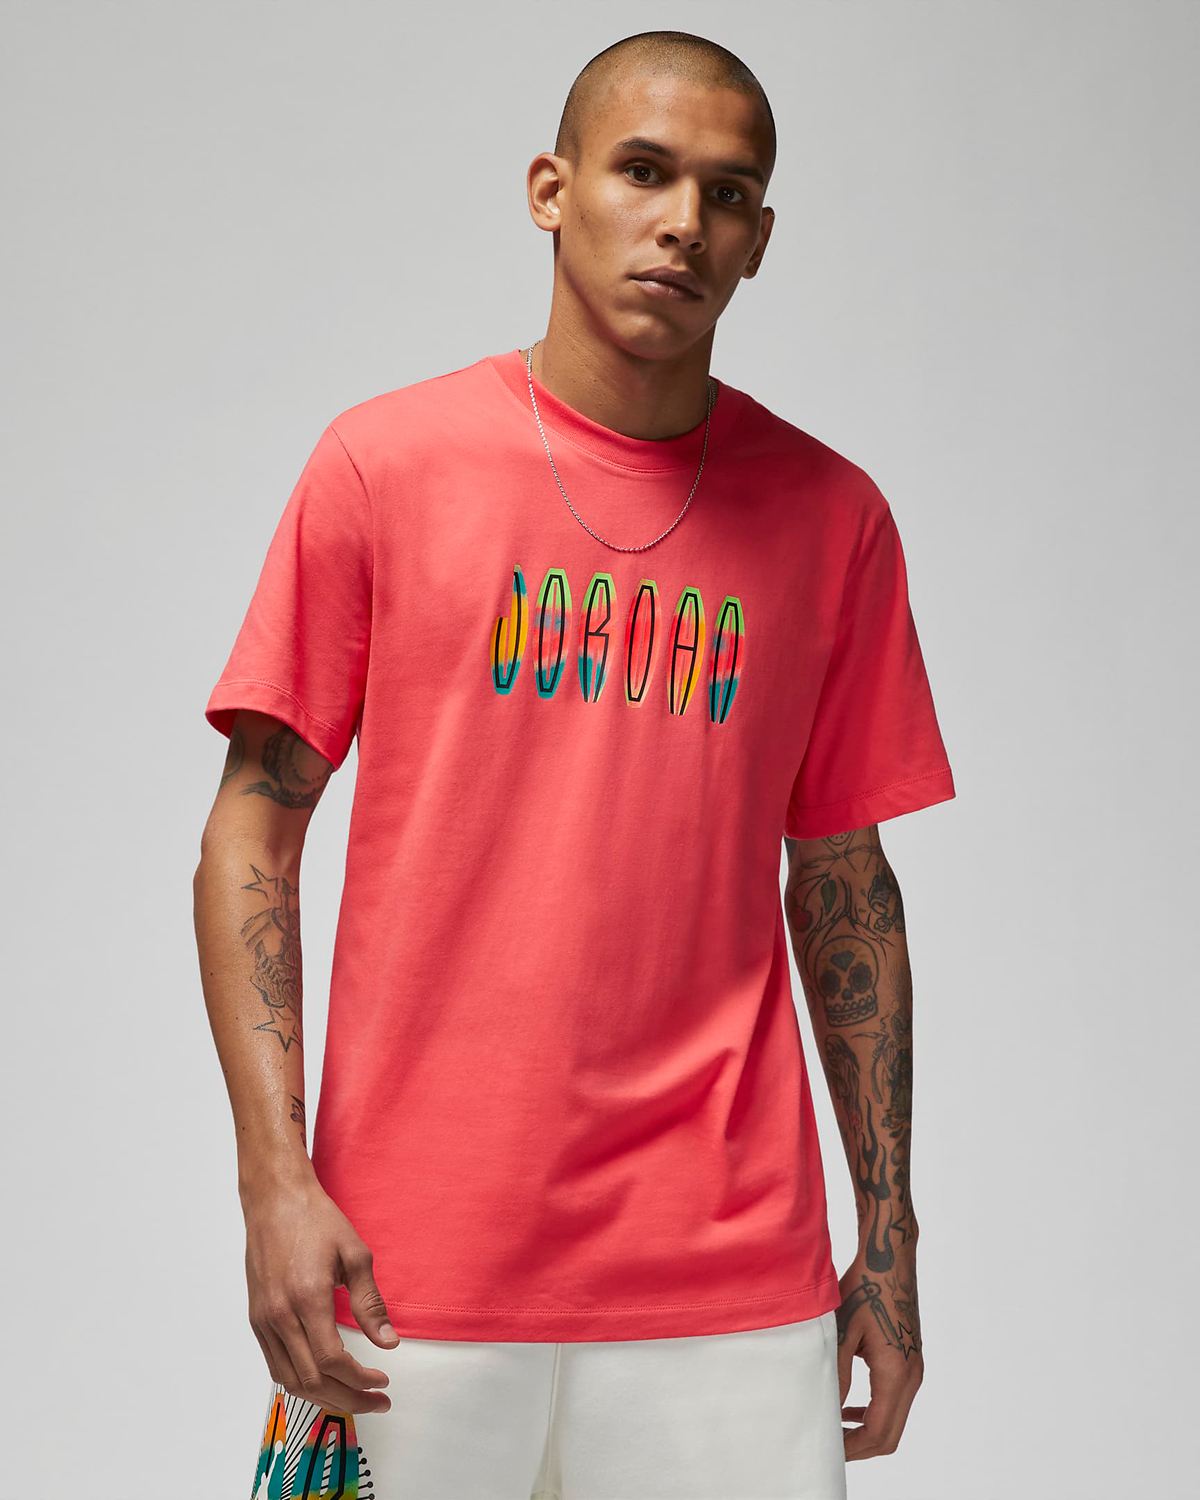 Air Jordan 4 Infrared Shirts Hats Clothing Outfits